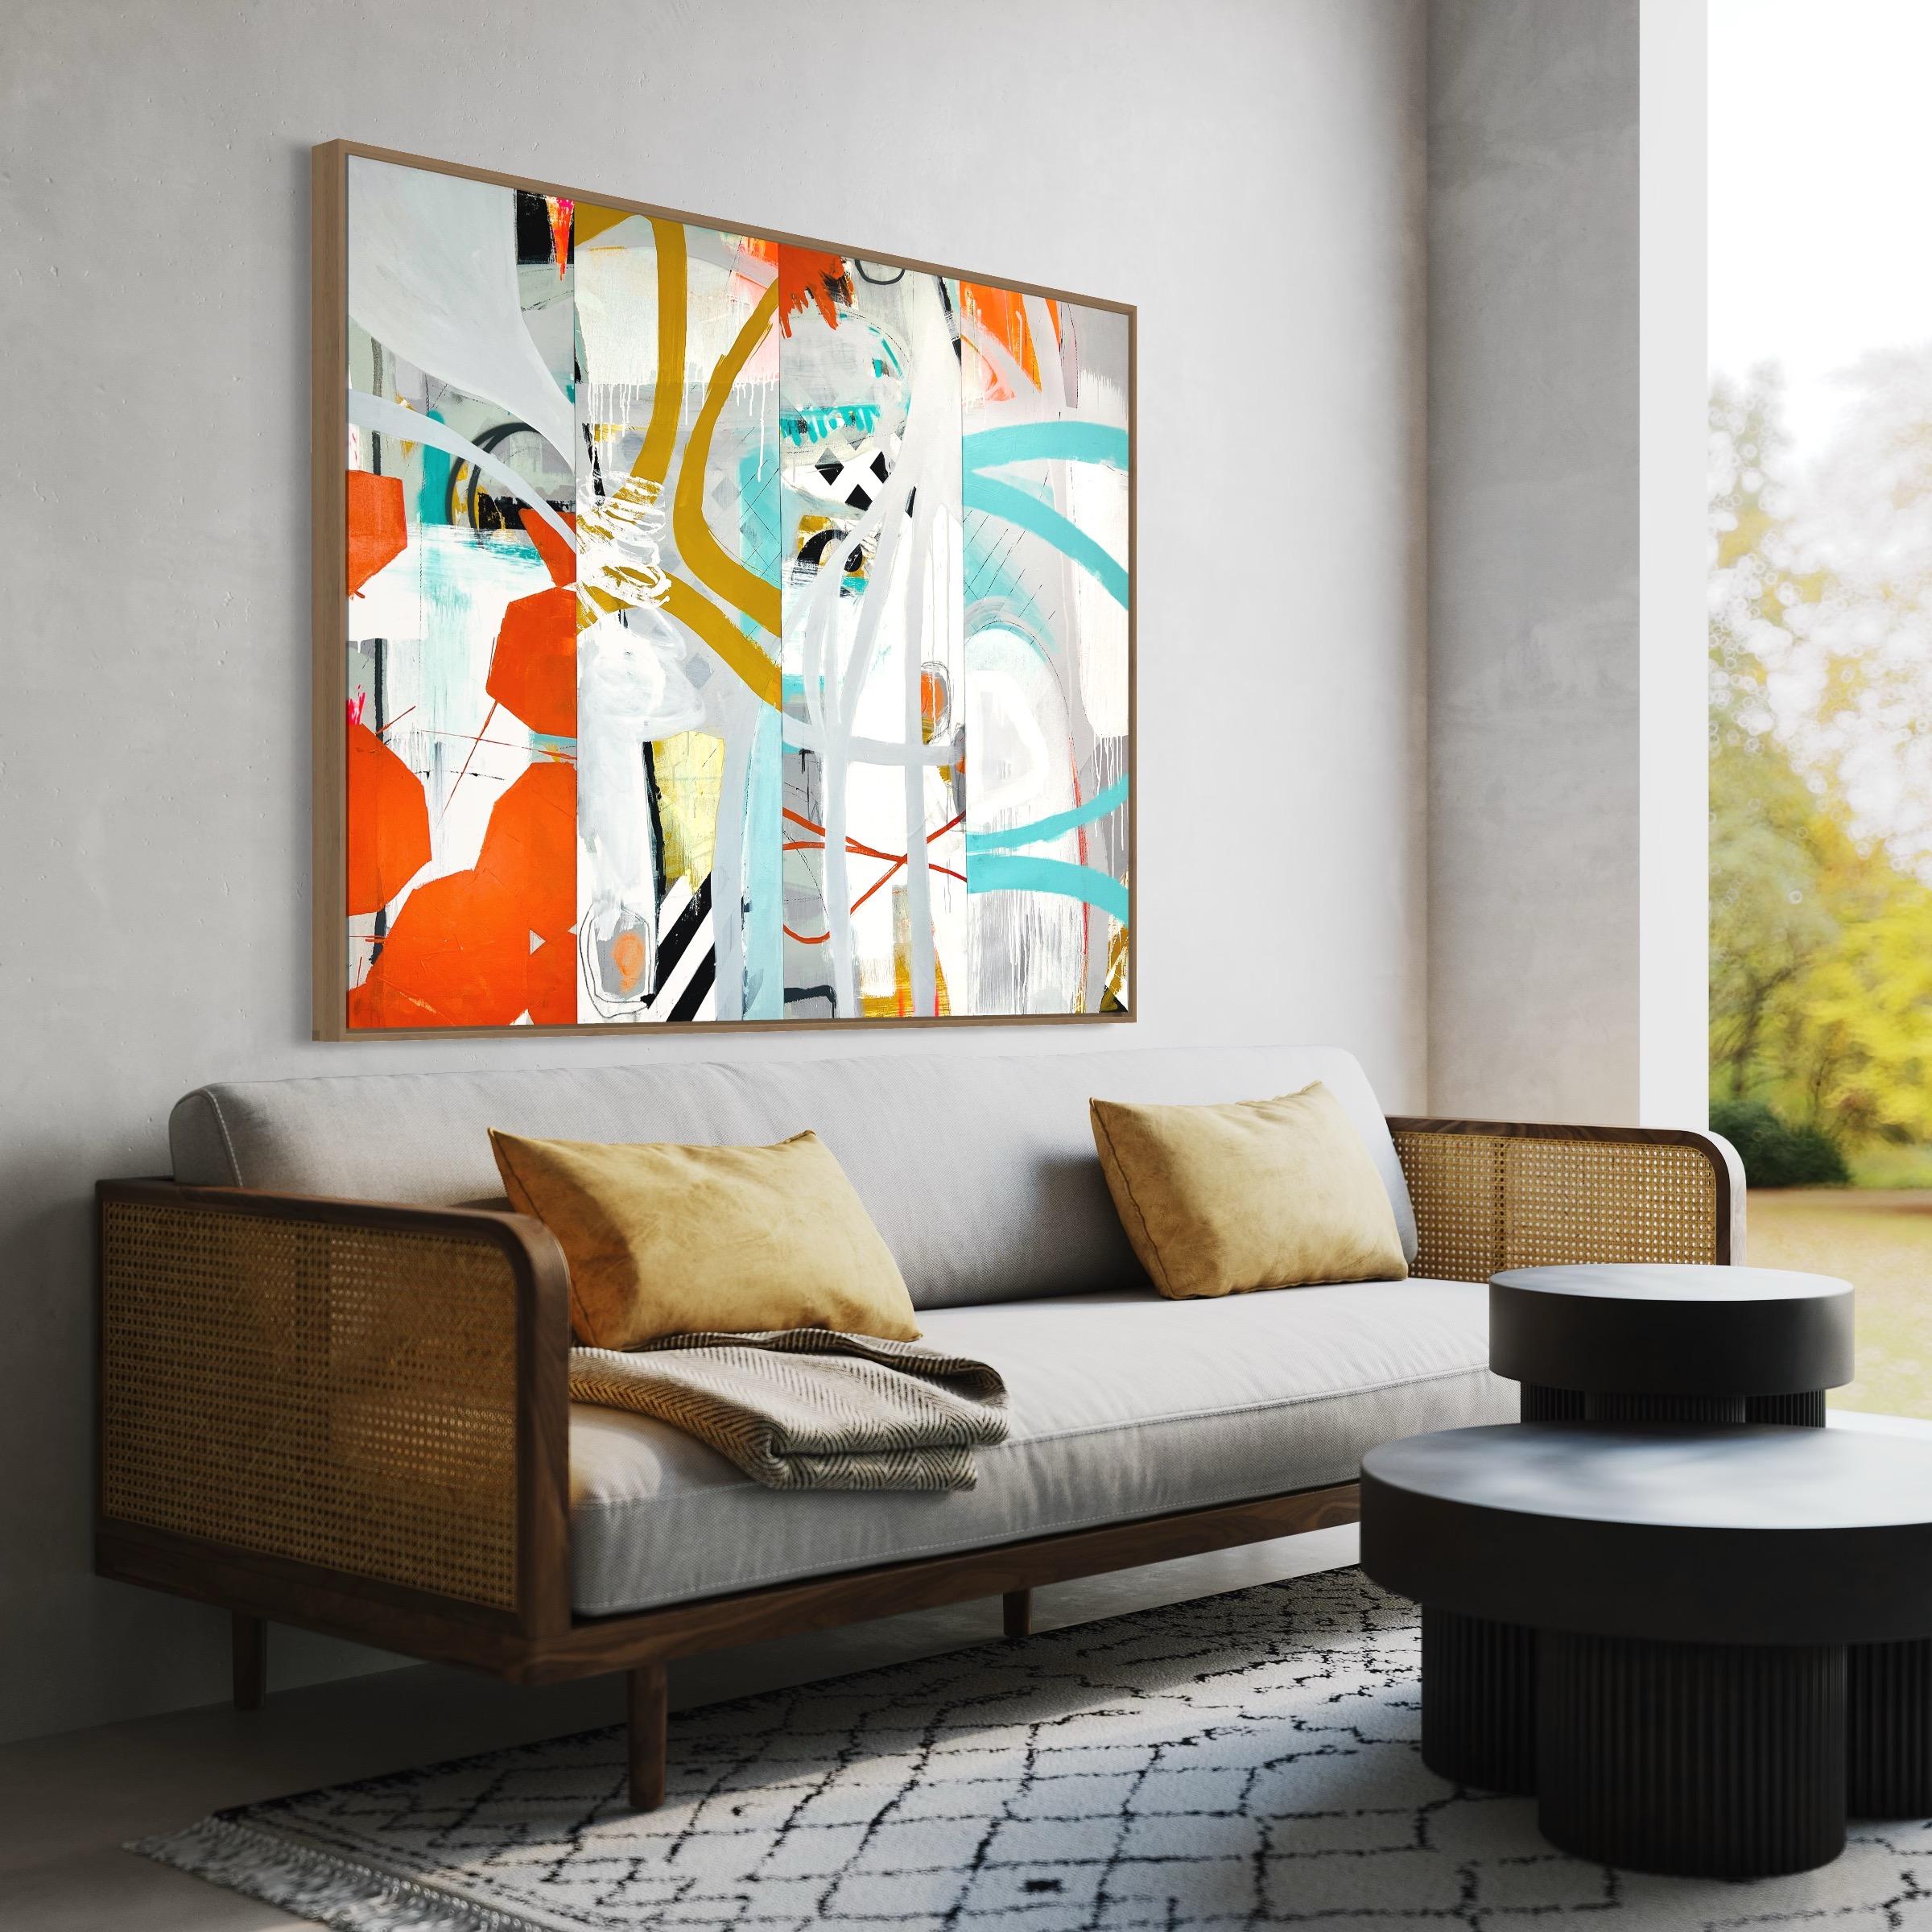 Mohnstich, Original Contemporary Bright Abstract Patterned Collage Painting
42x56x1,5 (HxBxT), Gemischte Medien

Kräftiges Orangerot, leuchtendes Cyan, gelber Ocker und eine Vielzahl kühler Grautöne ziehen sich durch die Komposition dieses